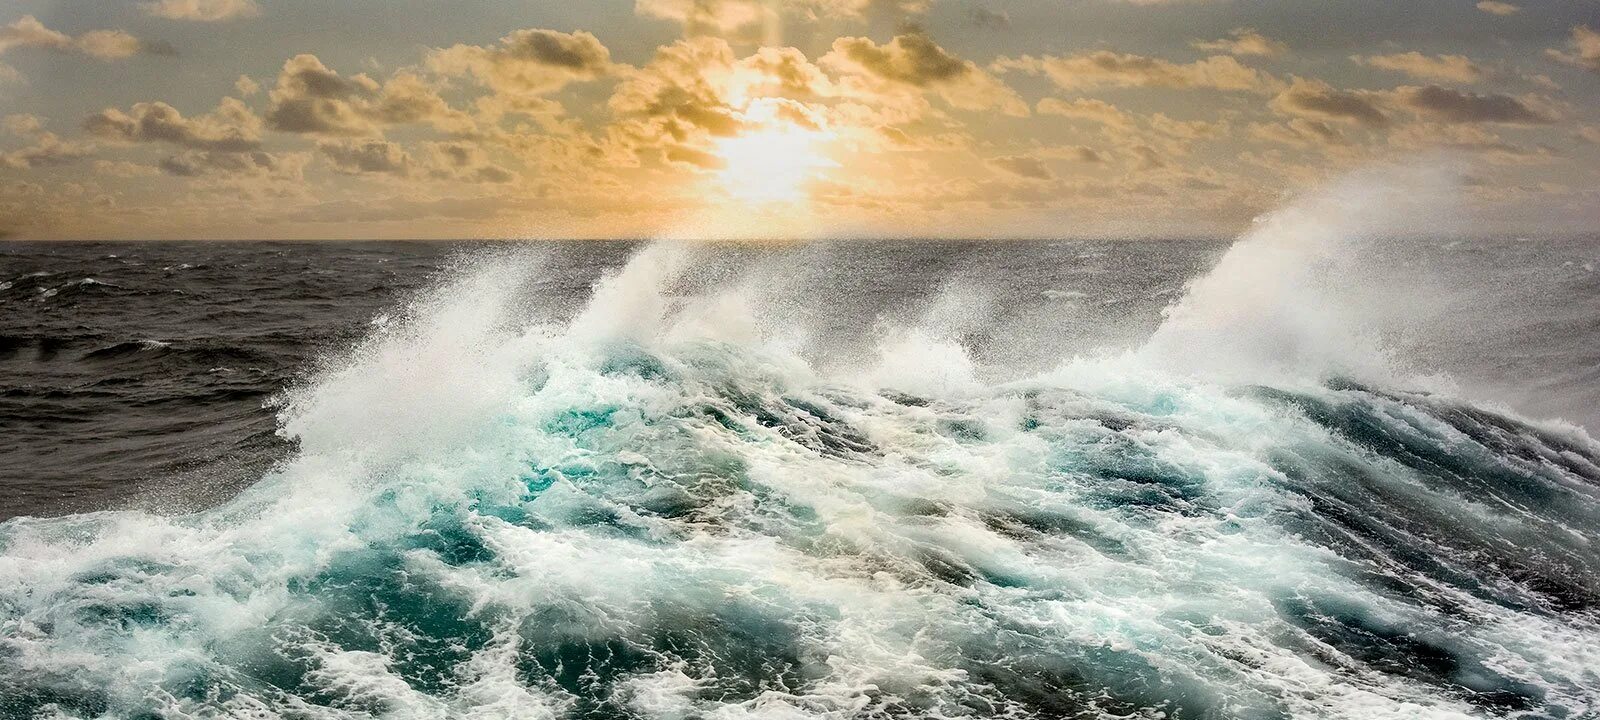 Включи северный шторм. Атлантический океан шторм. Атлантический океан фото шторм. Буря в Атлантическом океане. Атлантический океан волны.